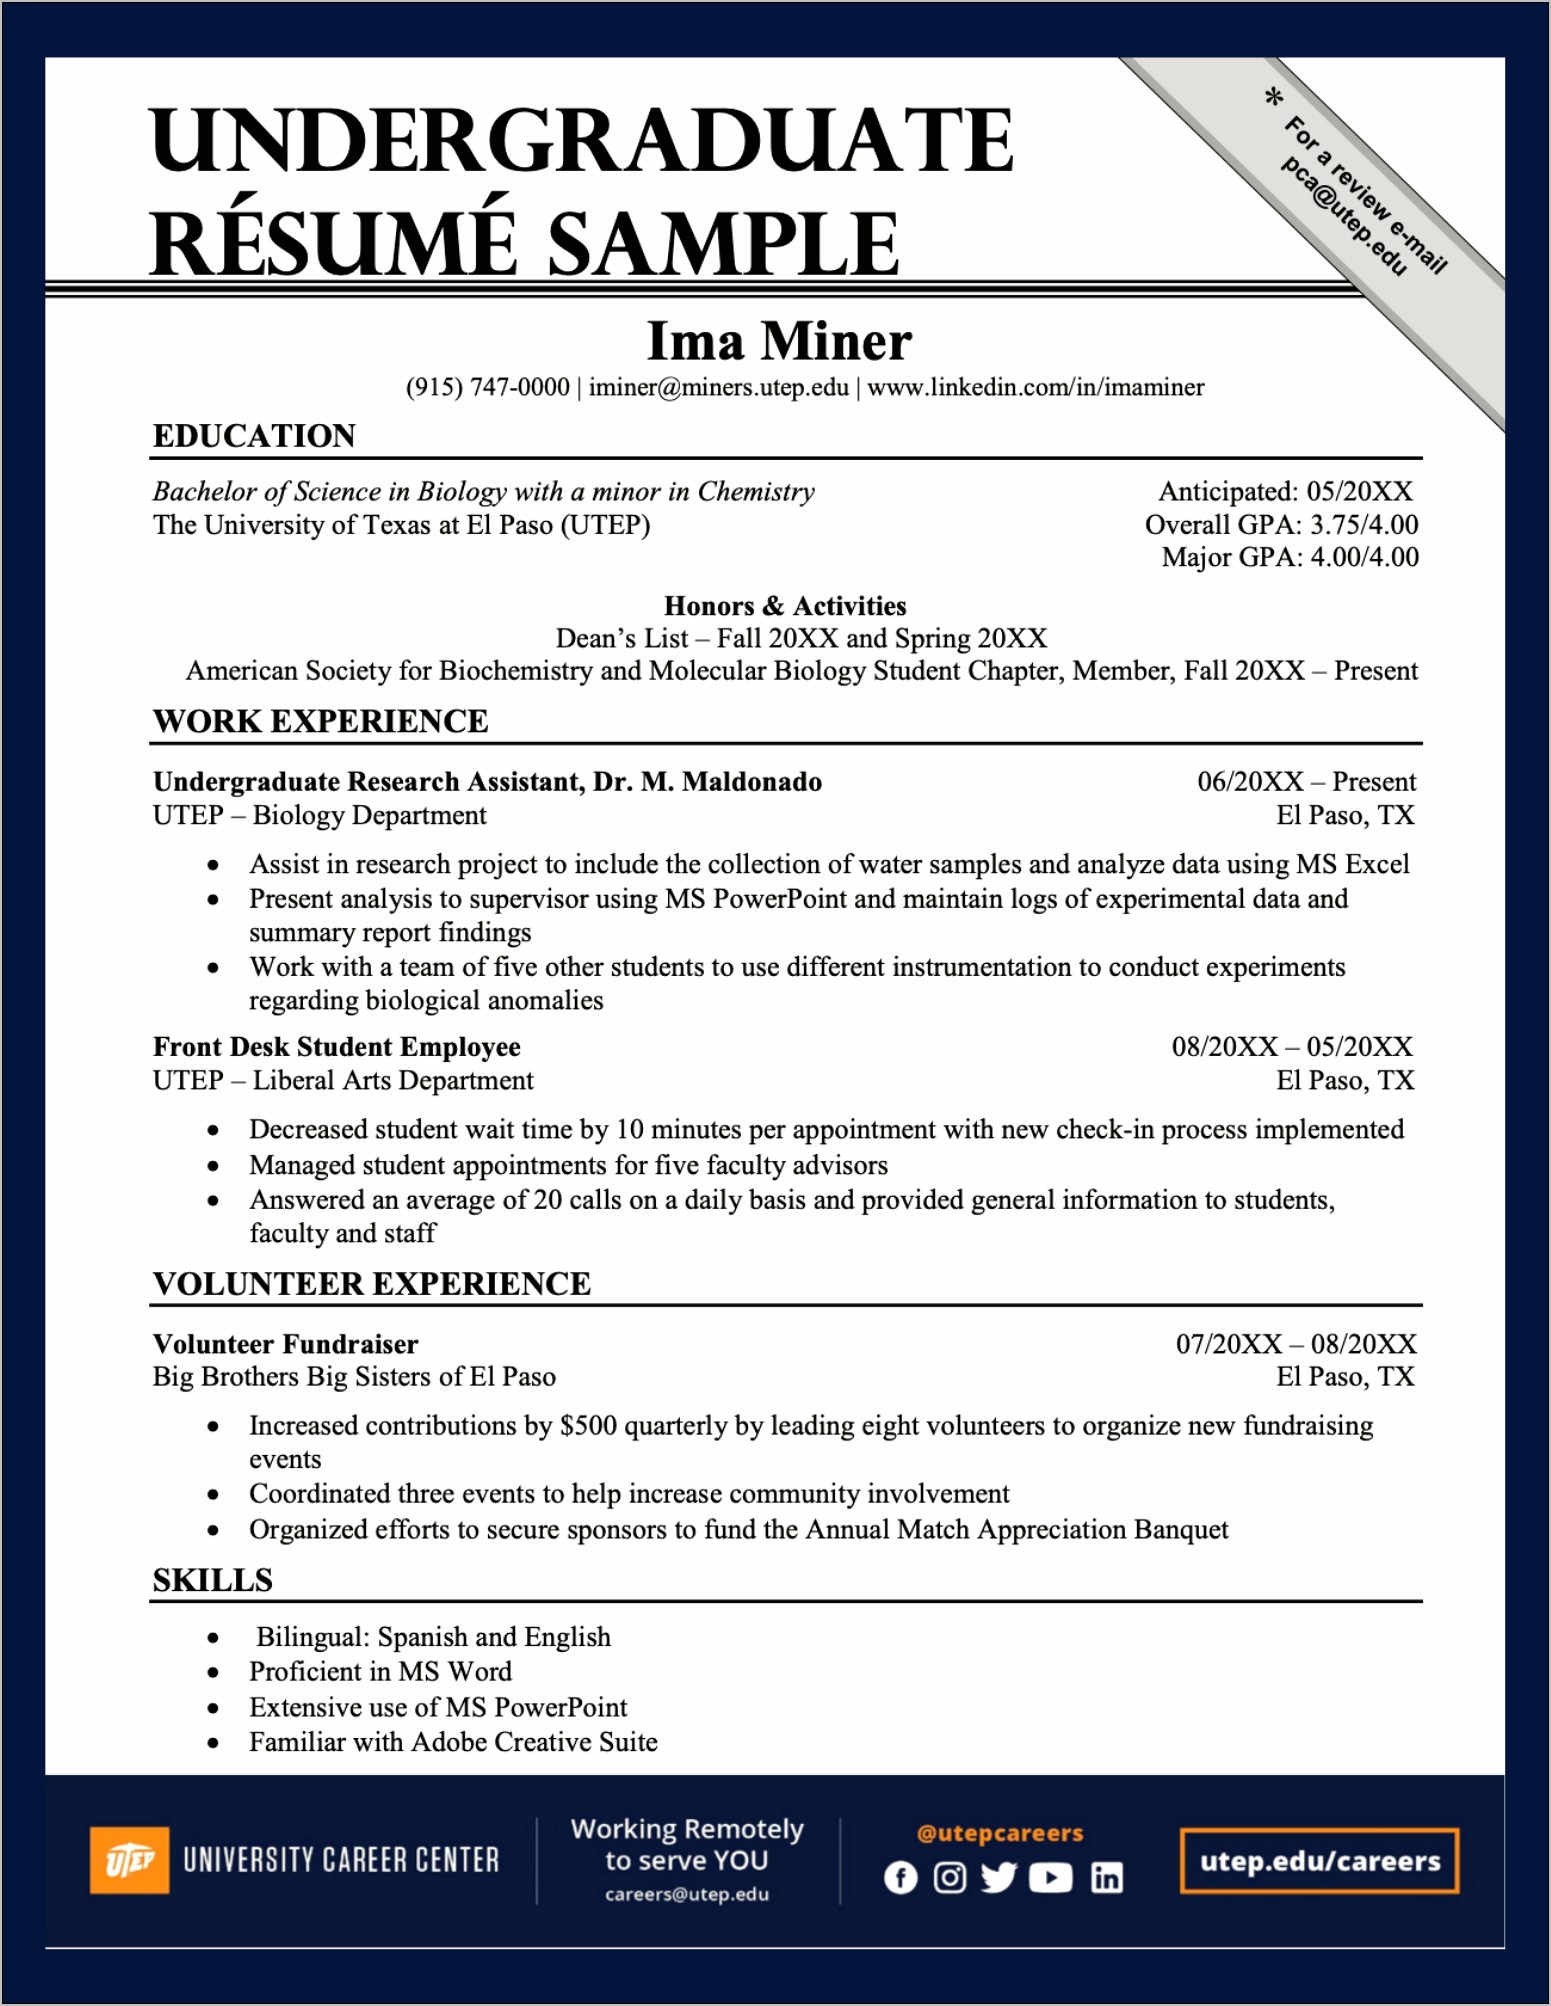 Resume For Teacher Job Application Pdf